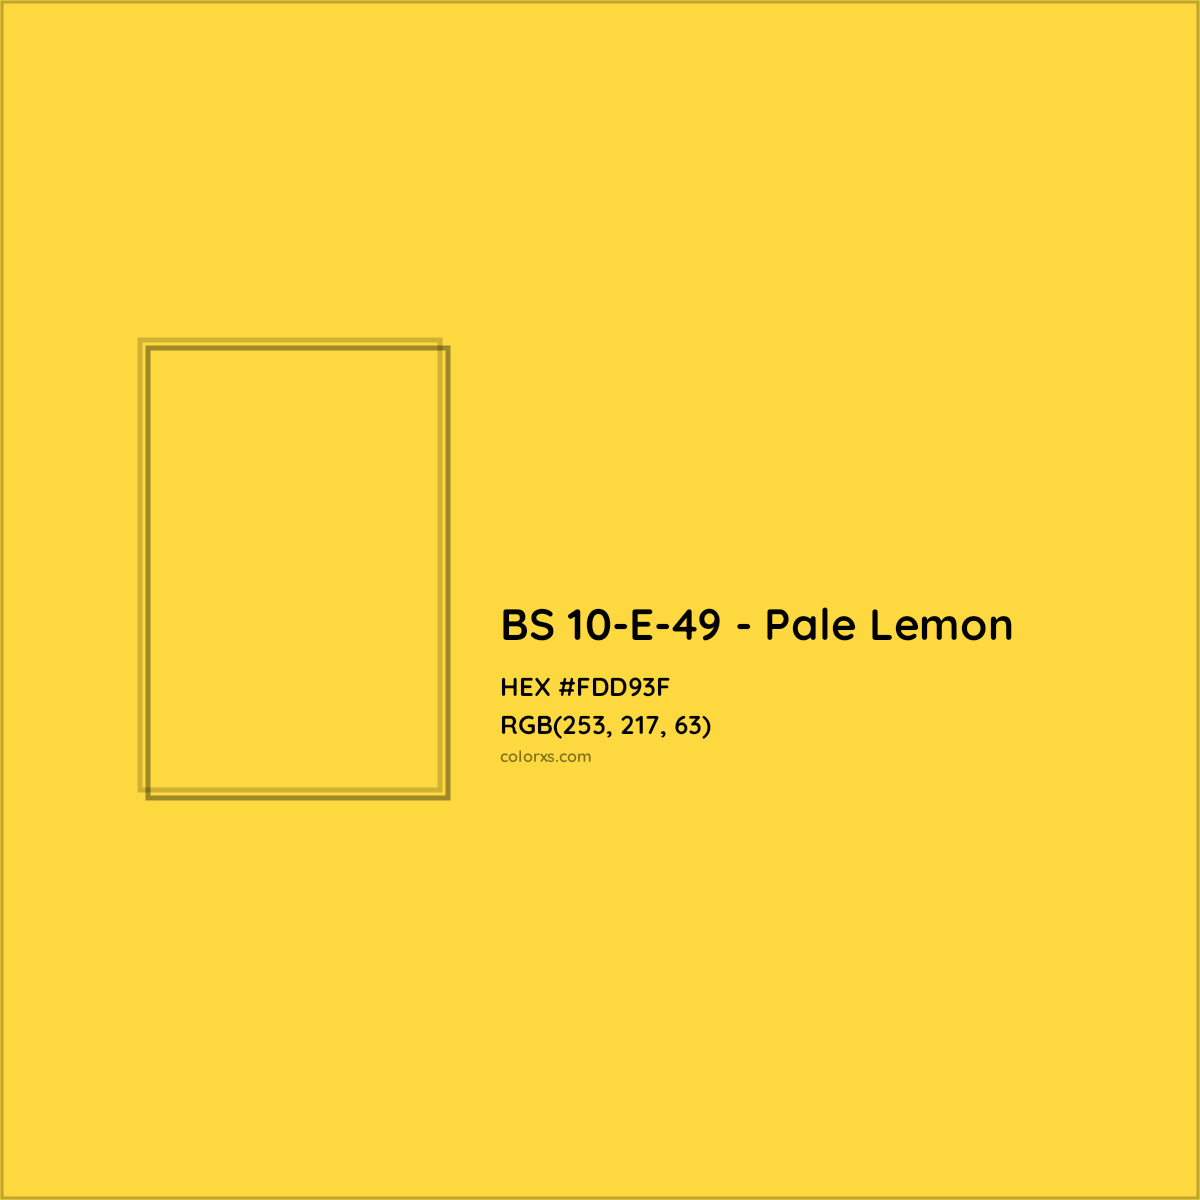 HEX #FDD93F BS 10-E-49 - Pale Lemon CMS British Standard 4800 - Color Code